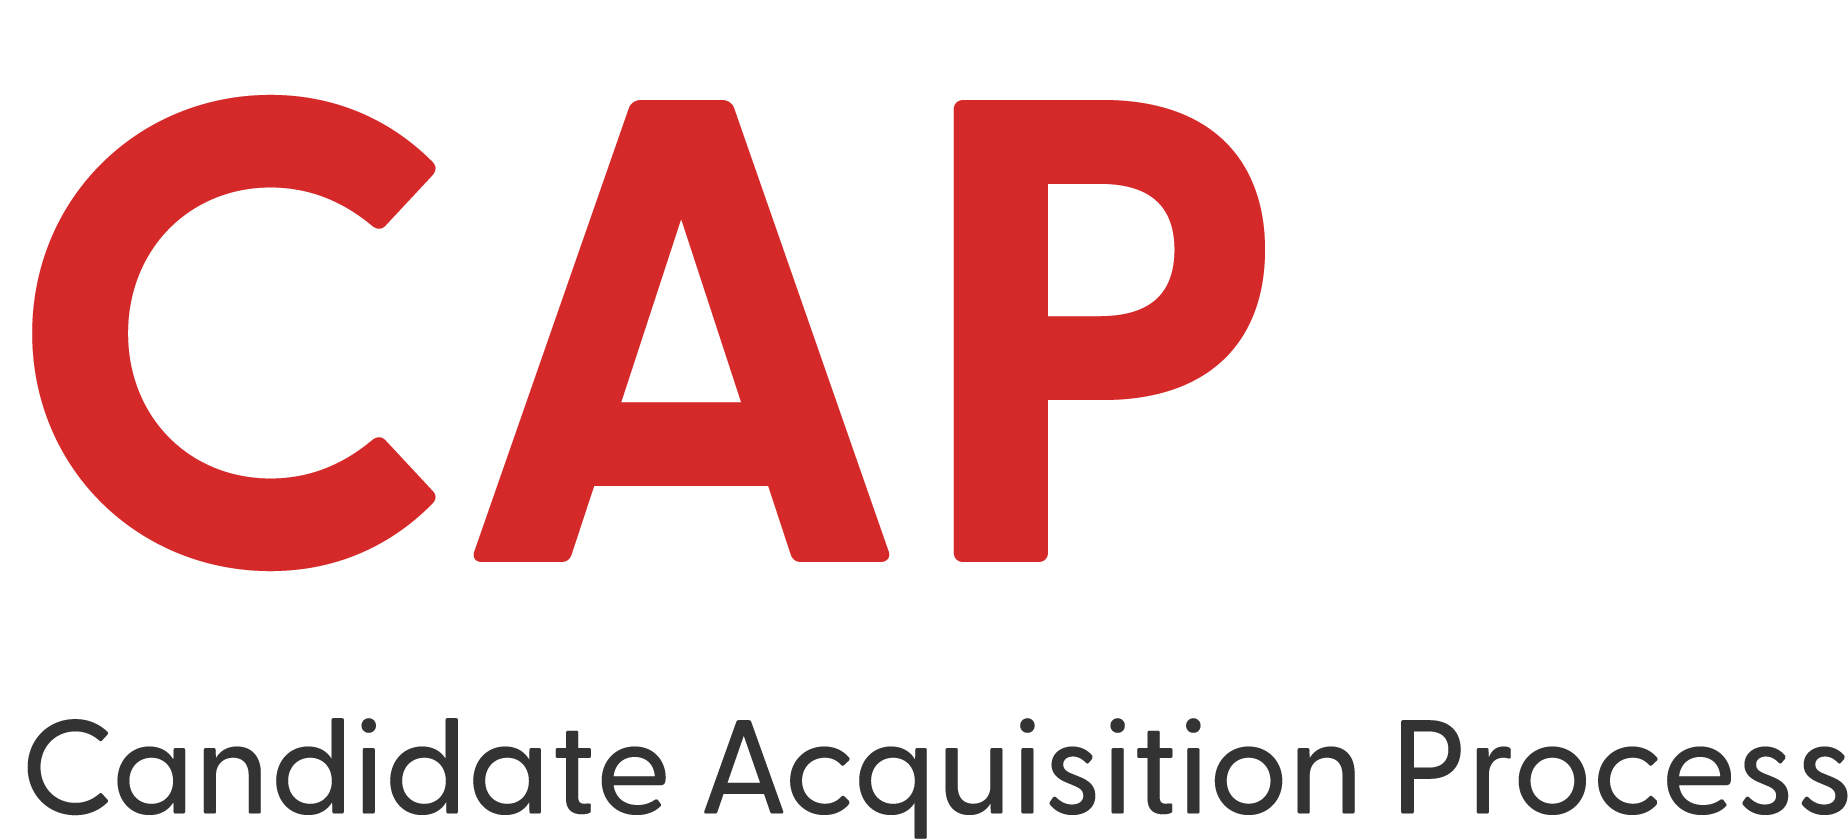 CAP Candidate Acquisition Process